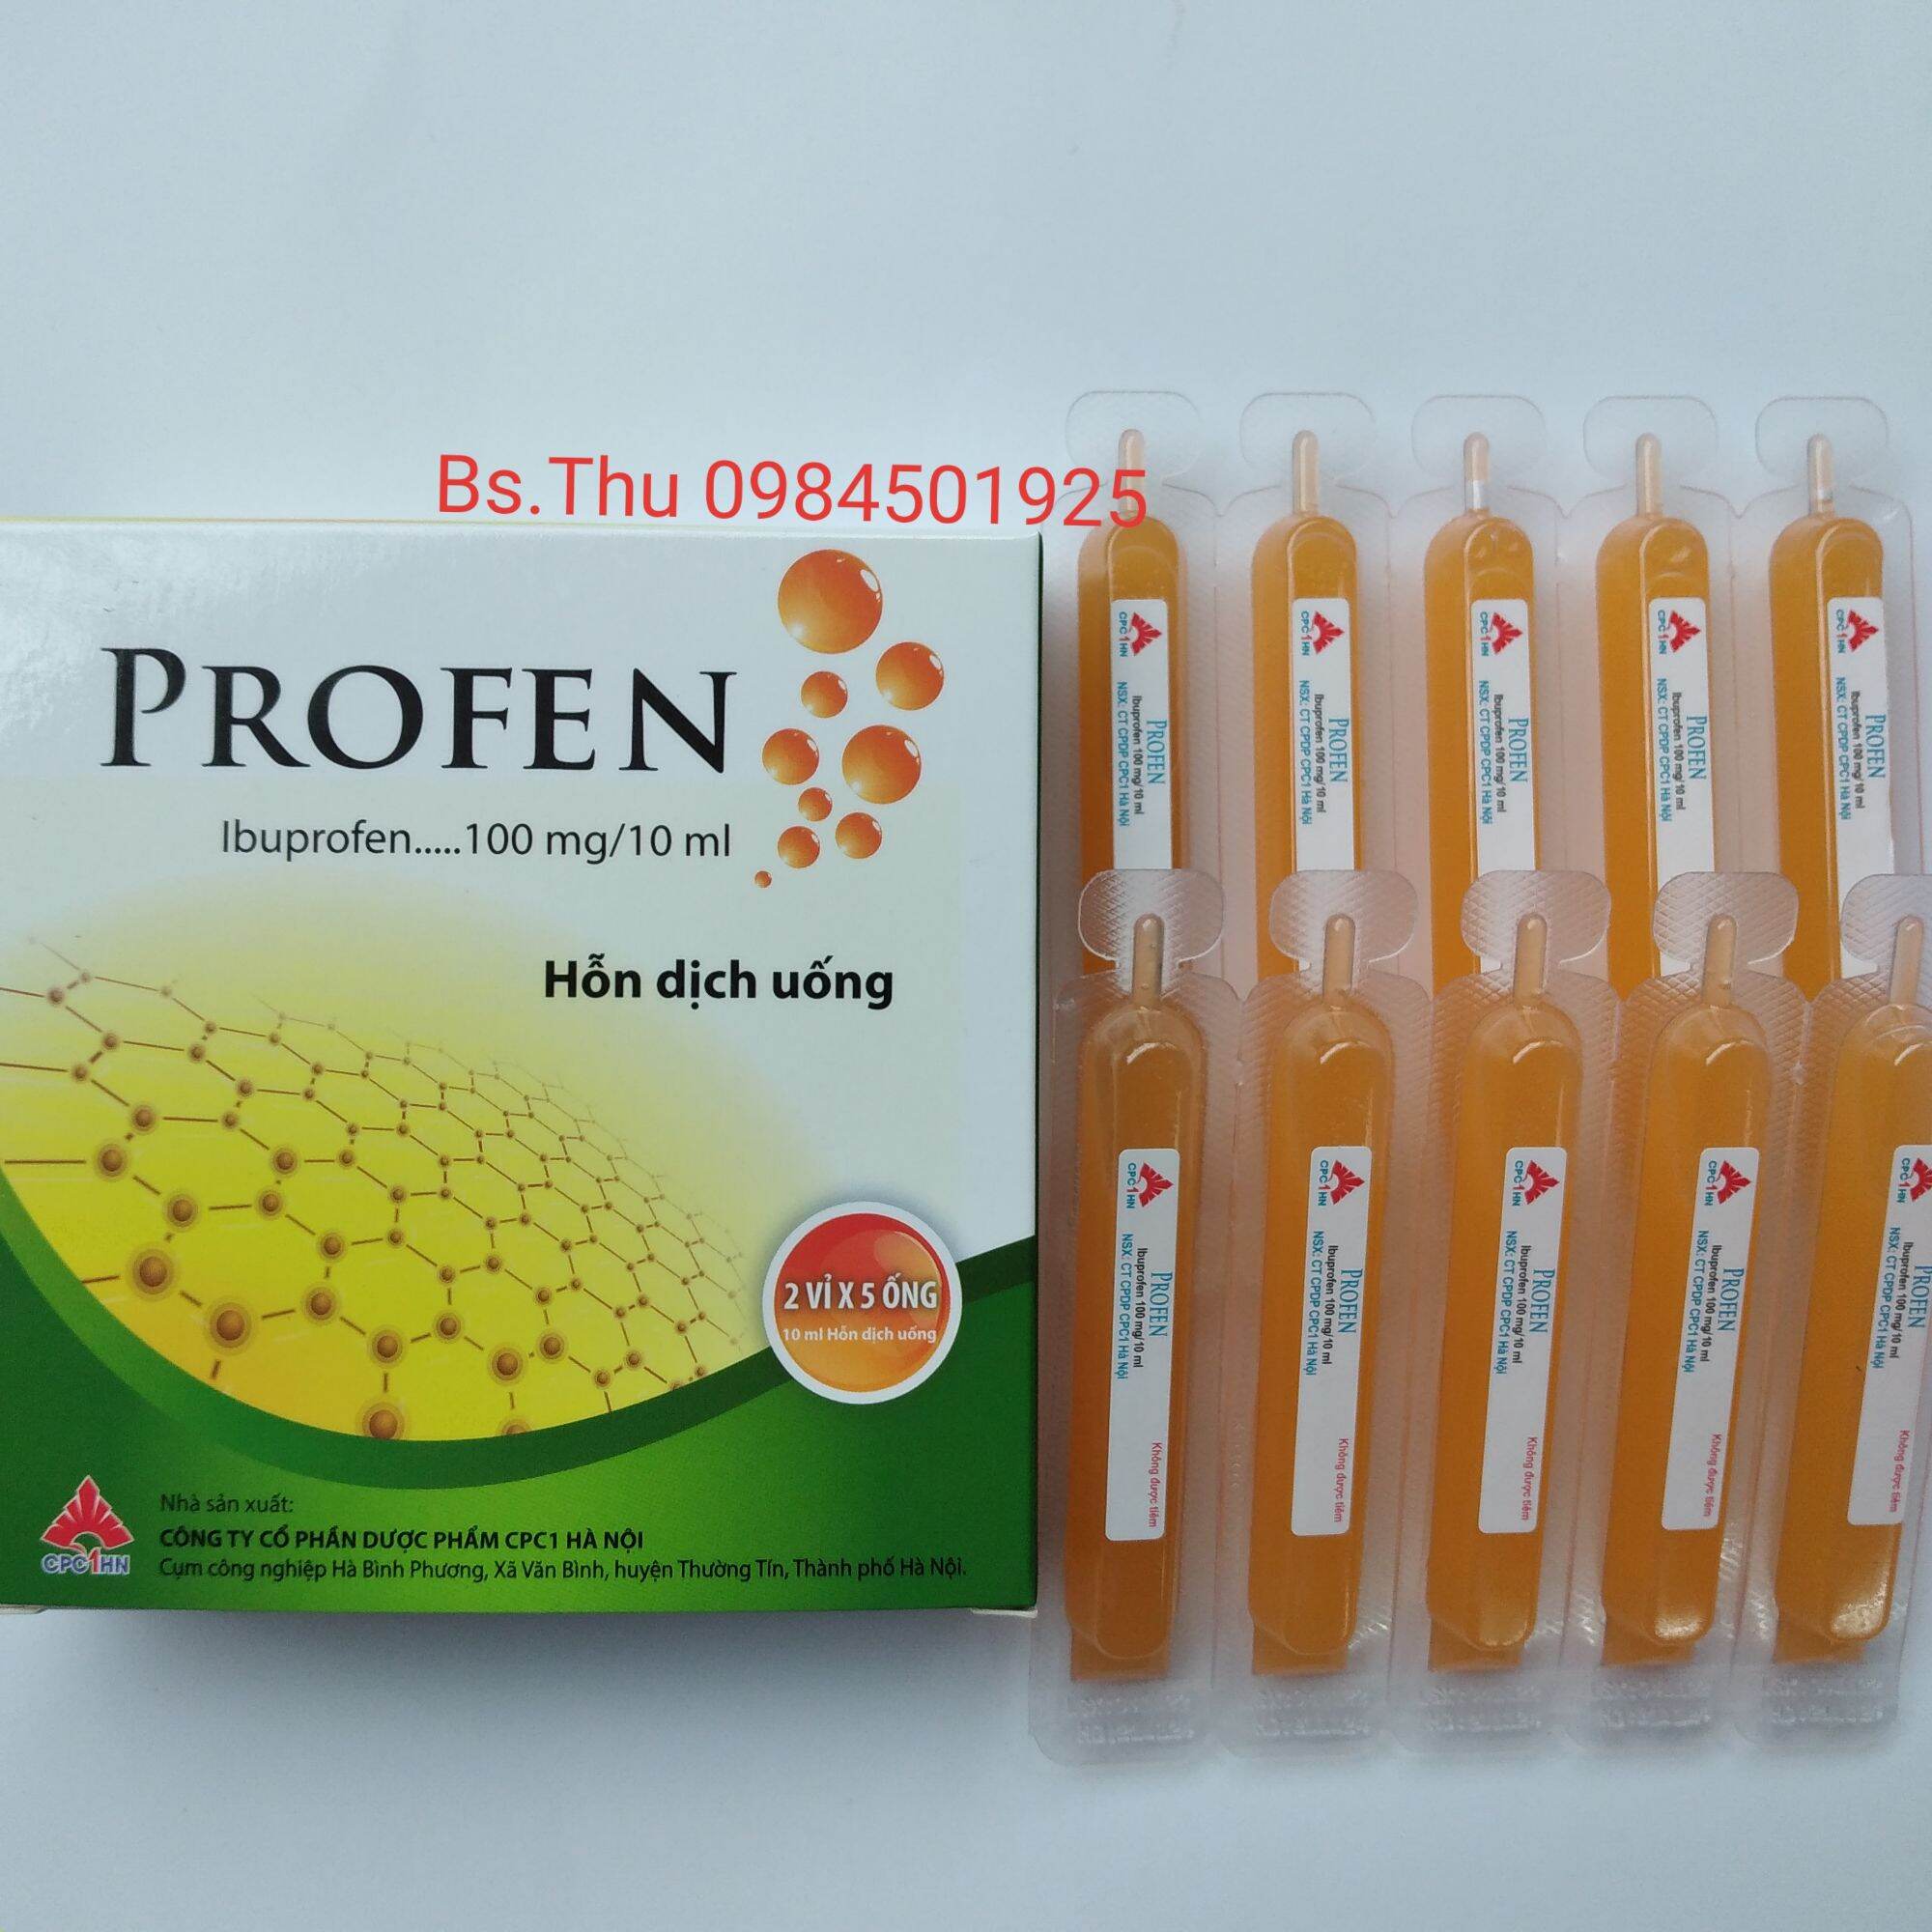 chính hãng Profen hộp 10 ống Ibuprofen100mg 10ml vị cam dễ uống